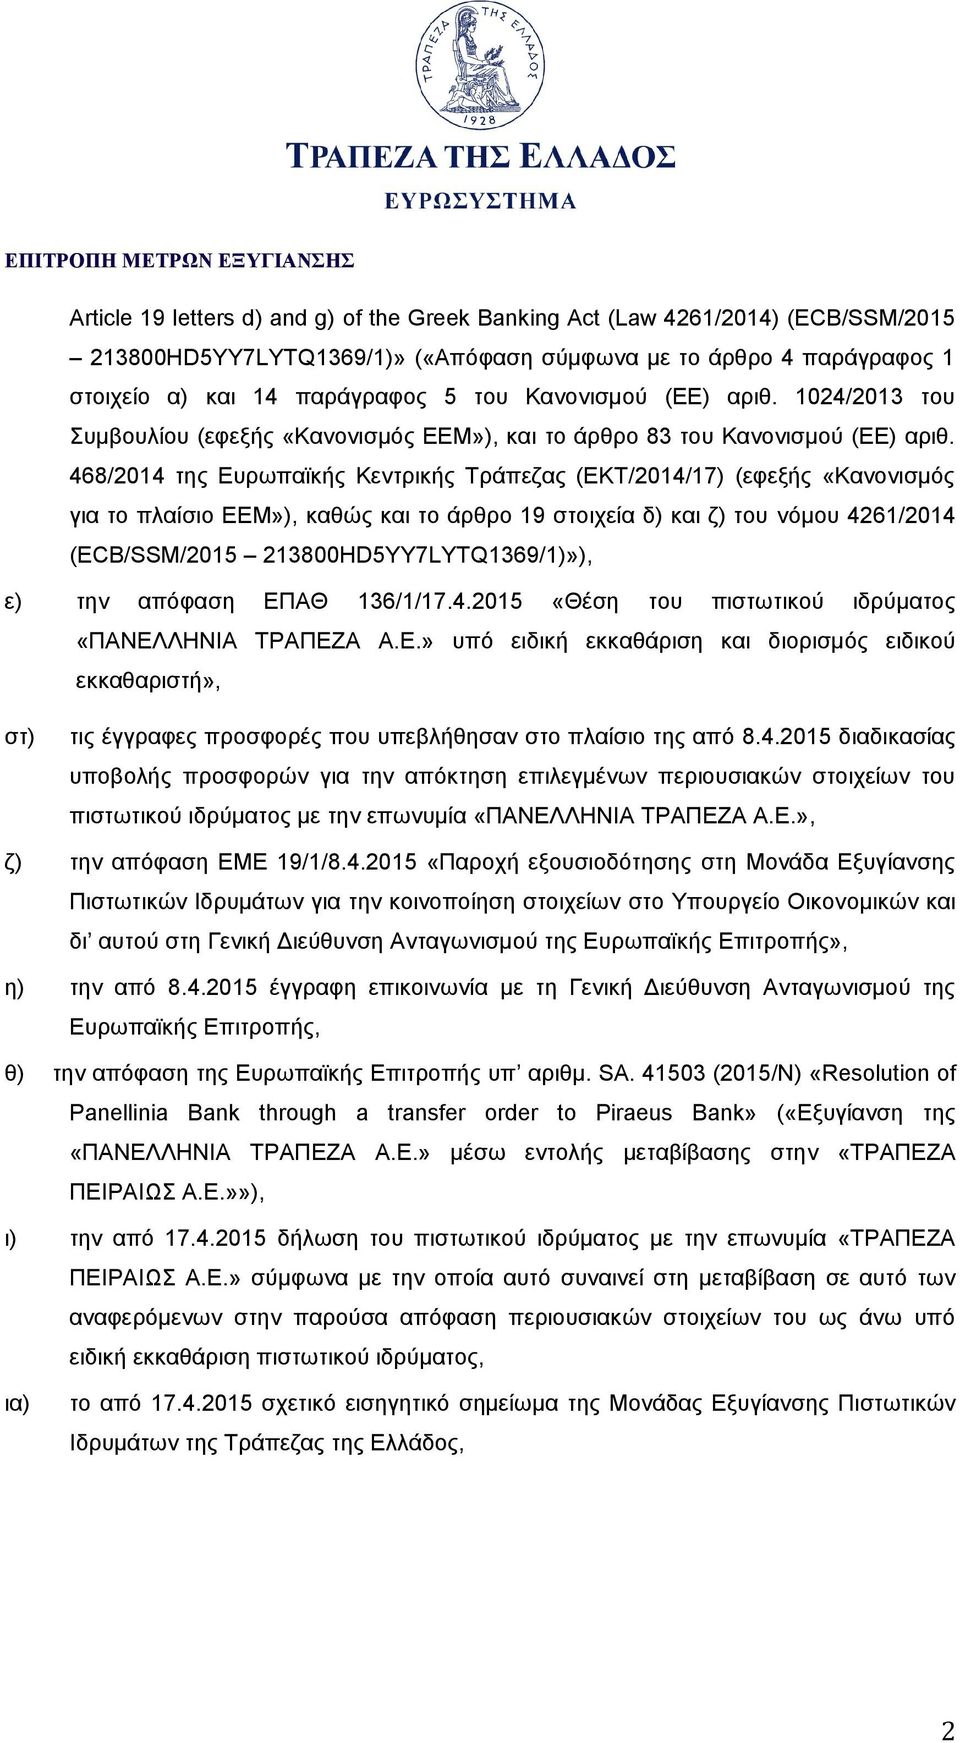 468/2014 της Ευρωπαϊκής Κεντρικής Τράπεζας (ΕΚΤ/2014/17) (εφεξής «Κανονισμός για το πλαίσιο ΕΕΜ»), καθώς και το άρθρο 19 στοιχεία δ) και ζ) του νόμου 4261/2014 (ECB/SSM/2015